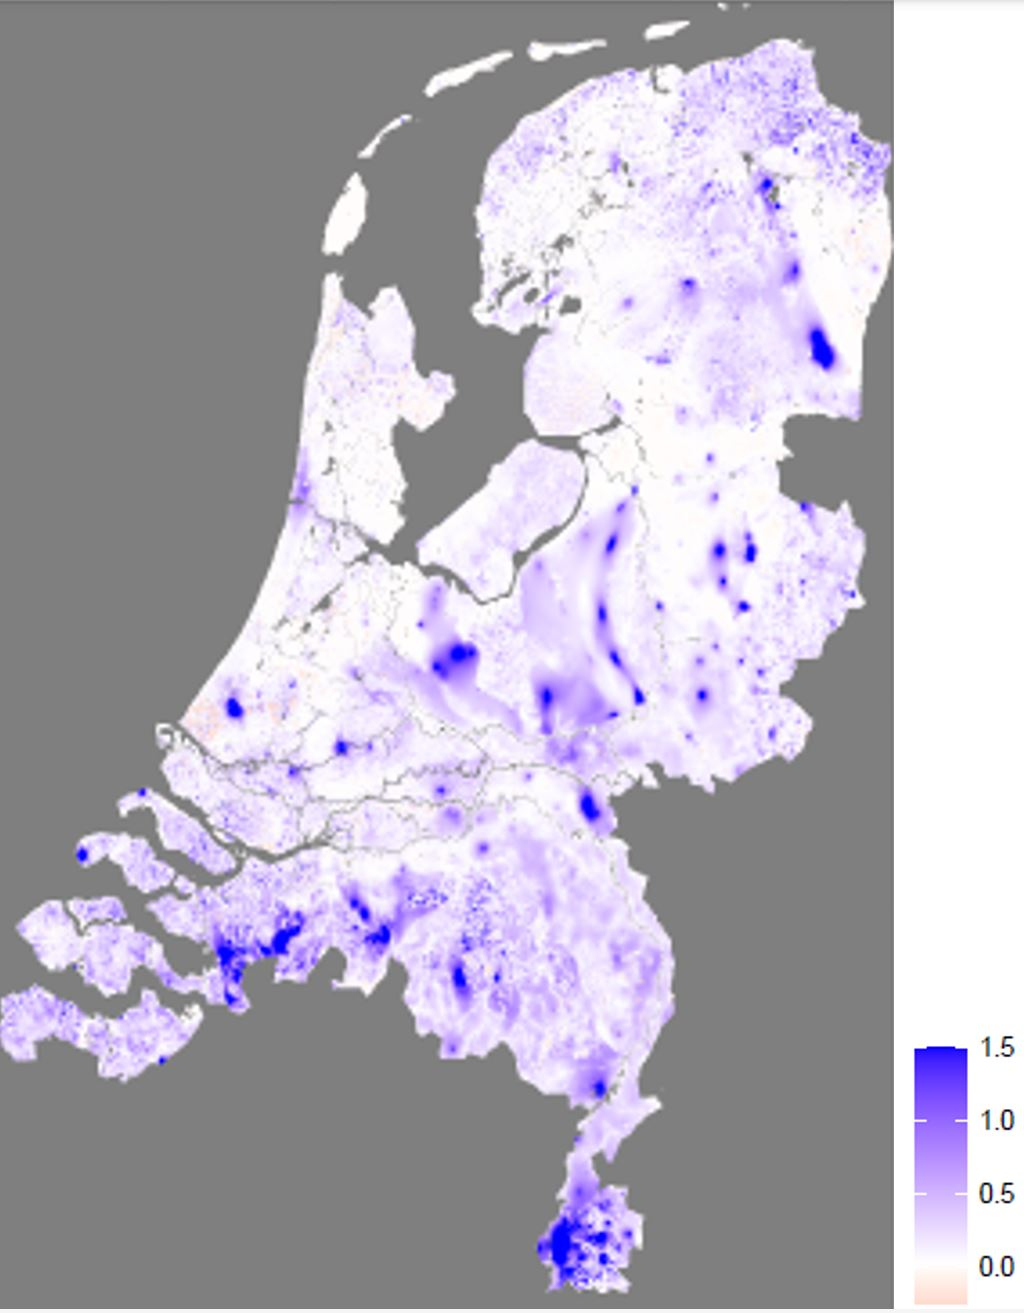 Invloed van aanpassingen in land gebruik en watermanagement op de grondwaterstanden in Nederland gegevens in meters ten opzichte van het huidige systeem.